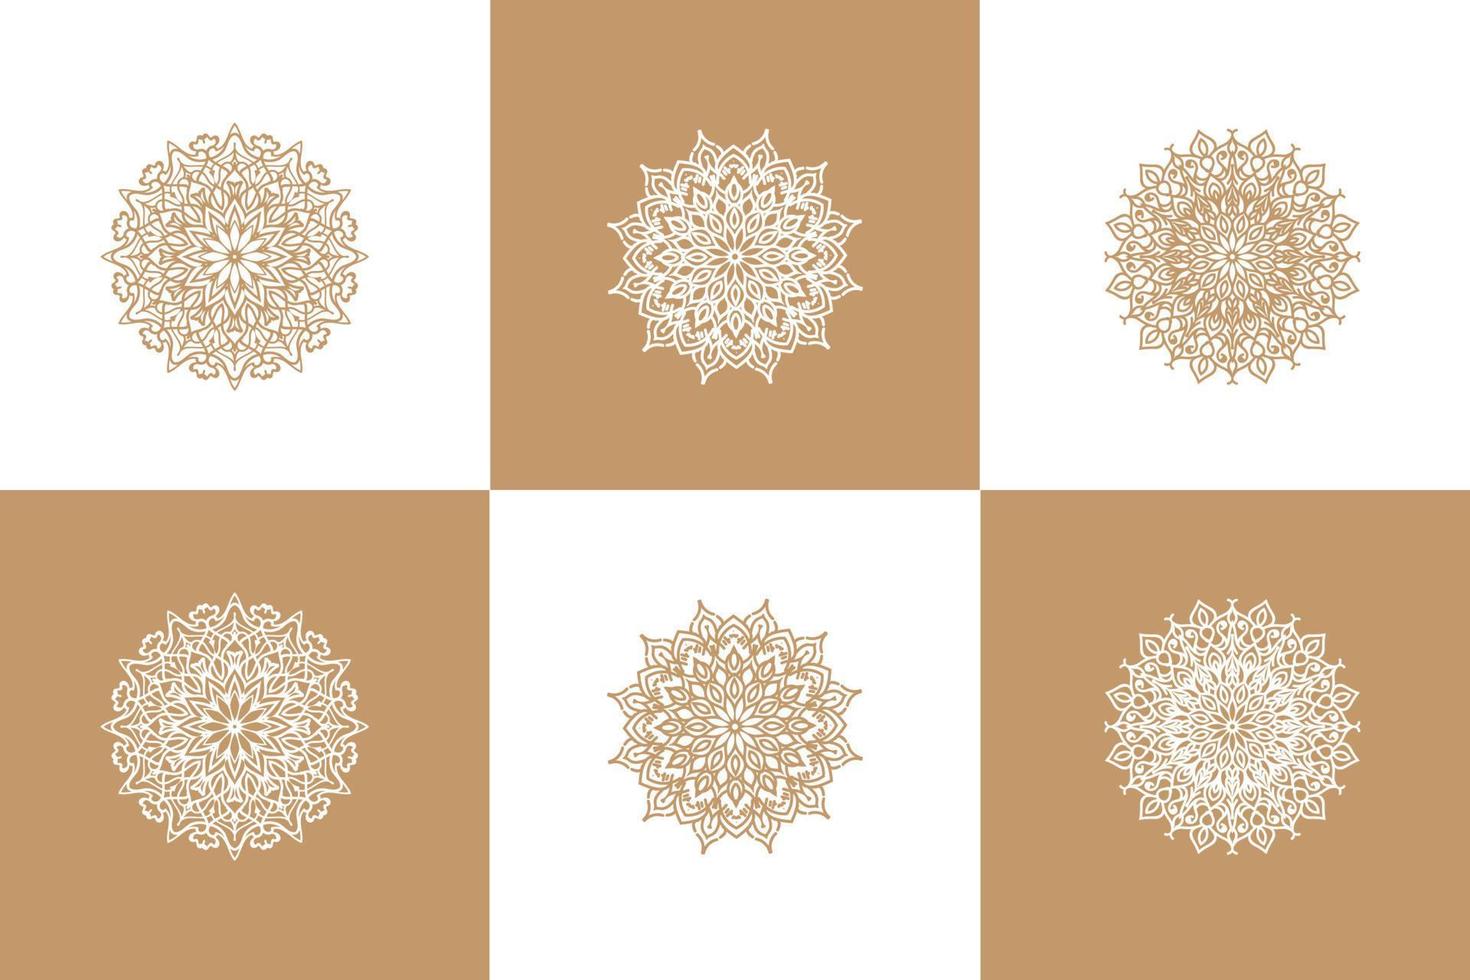 Mandala Flower Art Logo Background Design vector